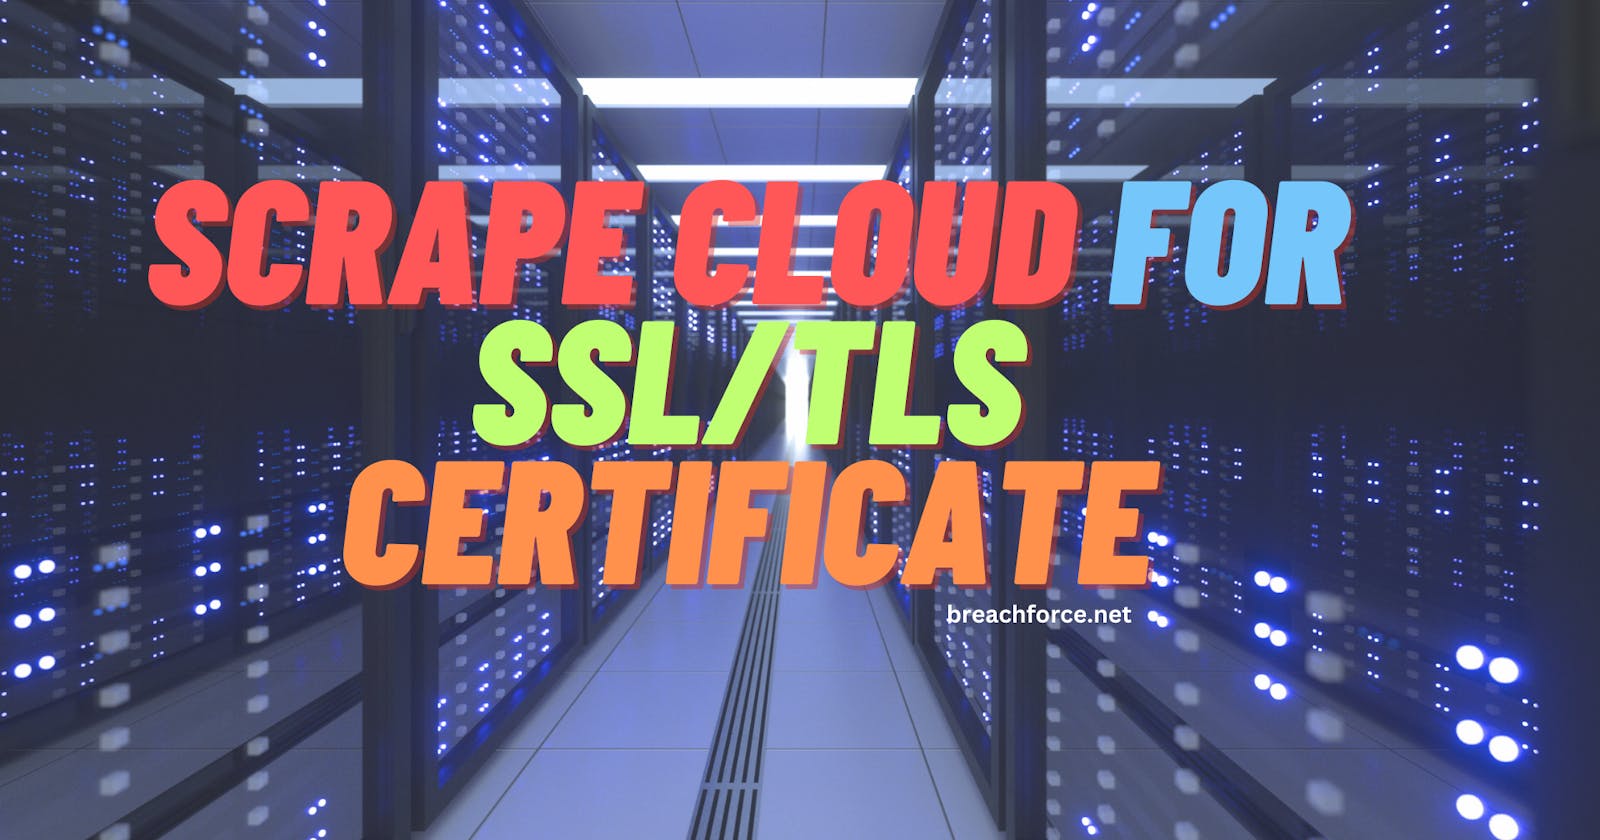 Scrape Cloud for SSL/TLS Certificate